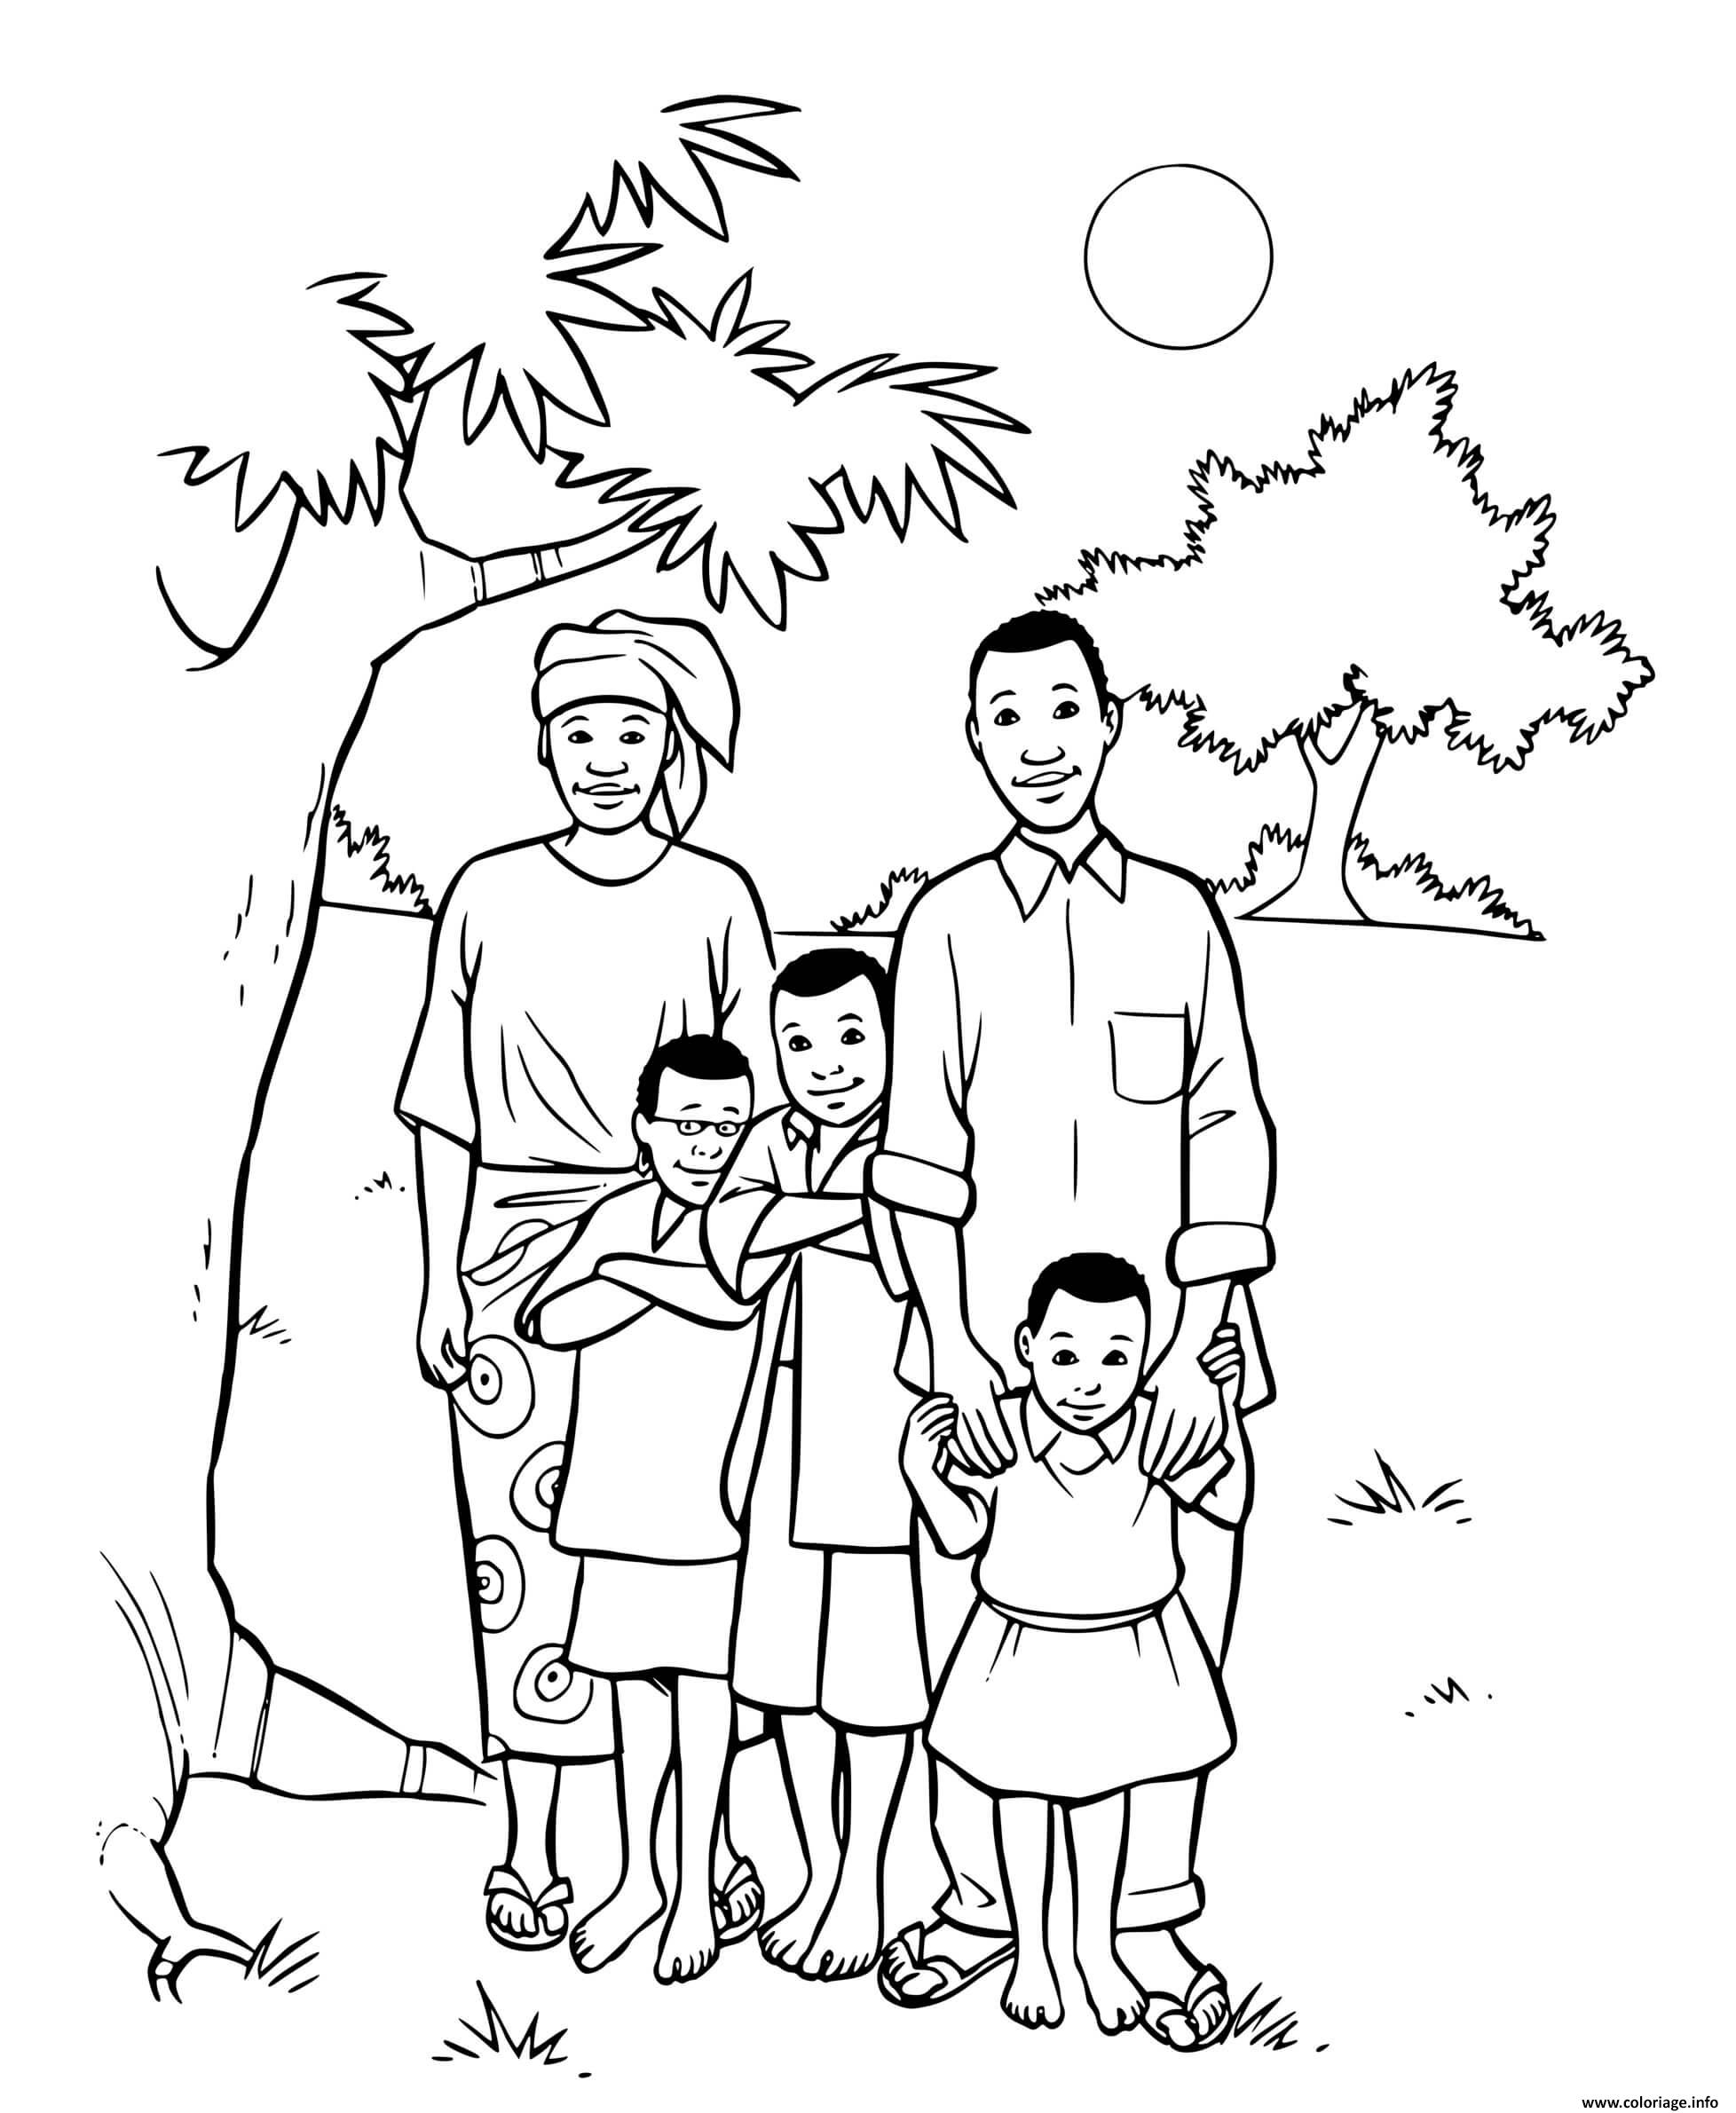 Dessin famille africaine avec trois enfants Coloriage Gratuit à Imprimer